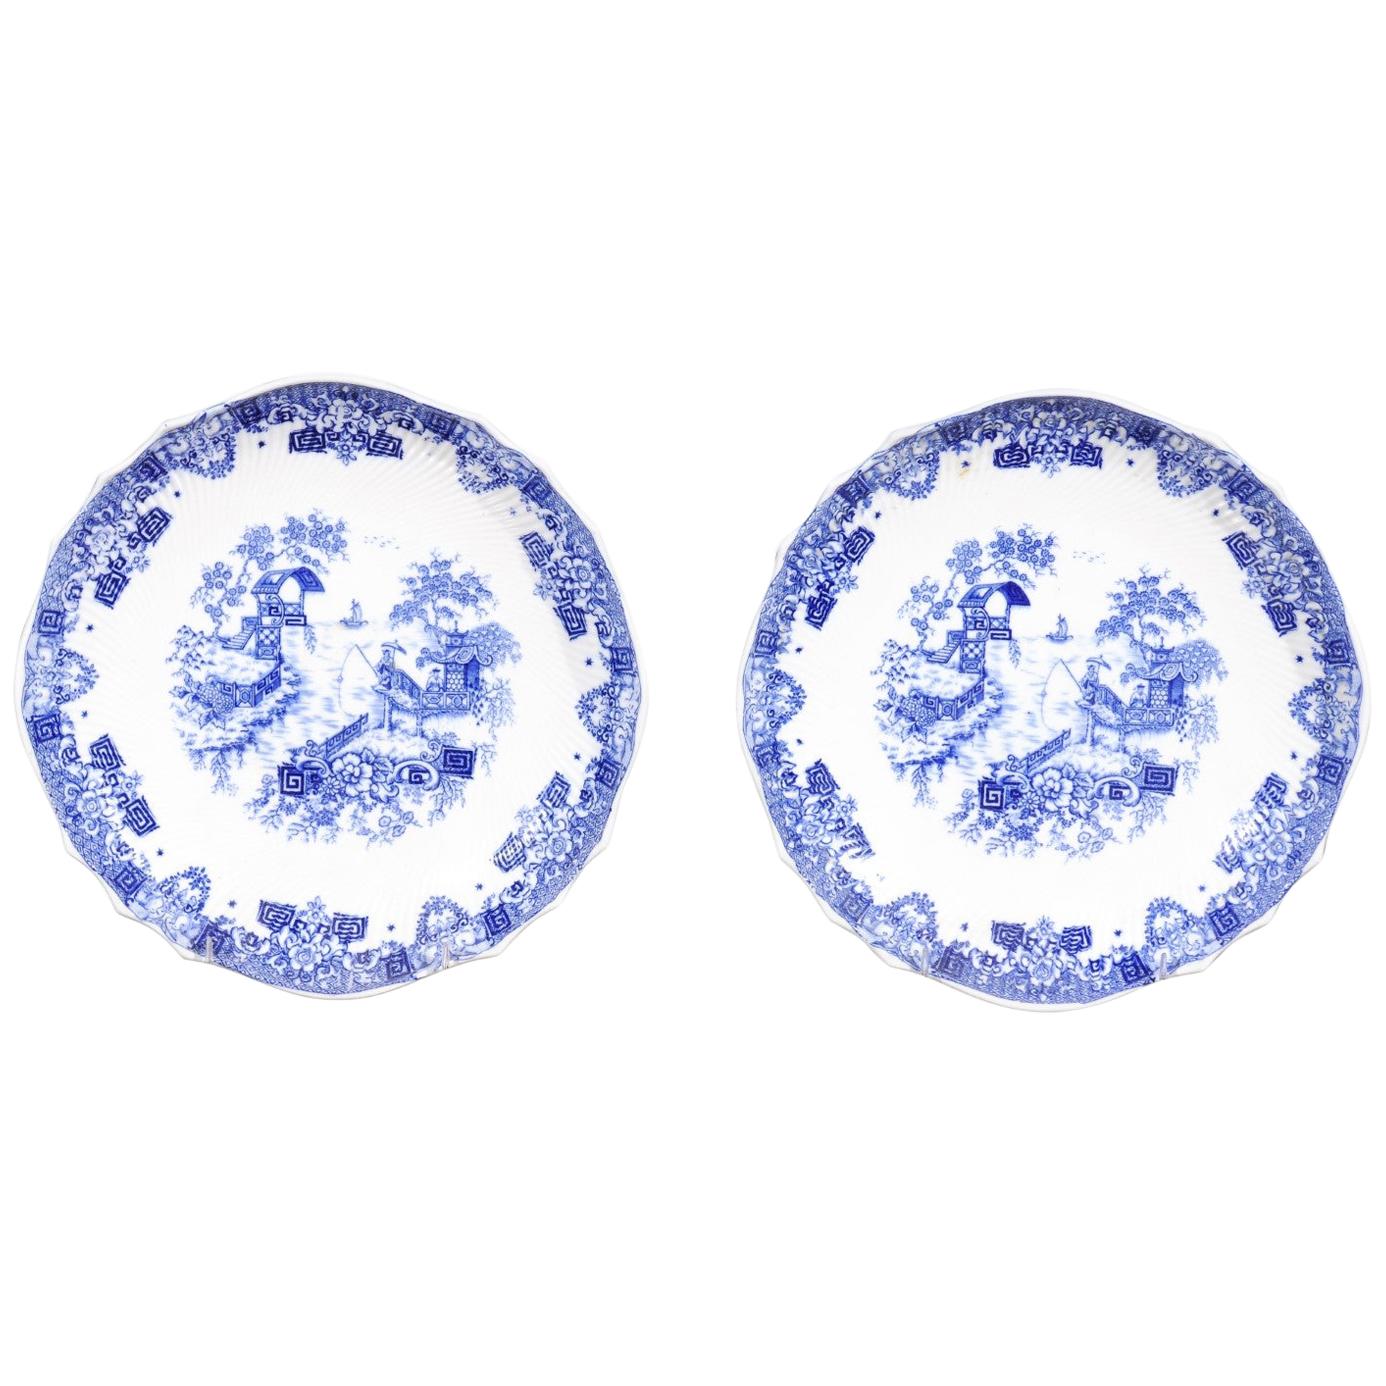 Deux assiettes décoratives anglaises bleu et blanc de Copeland Spode, fin du 19e siècle